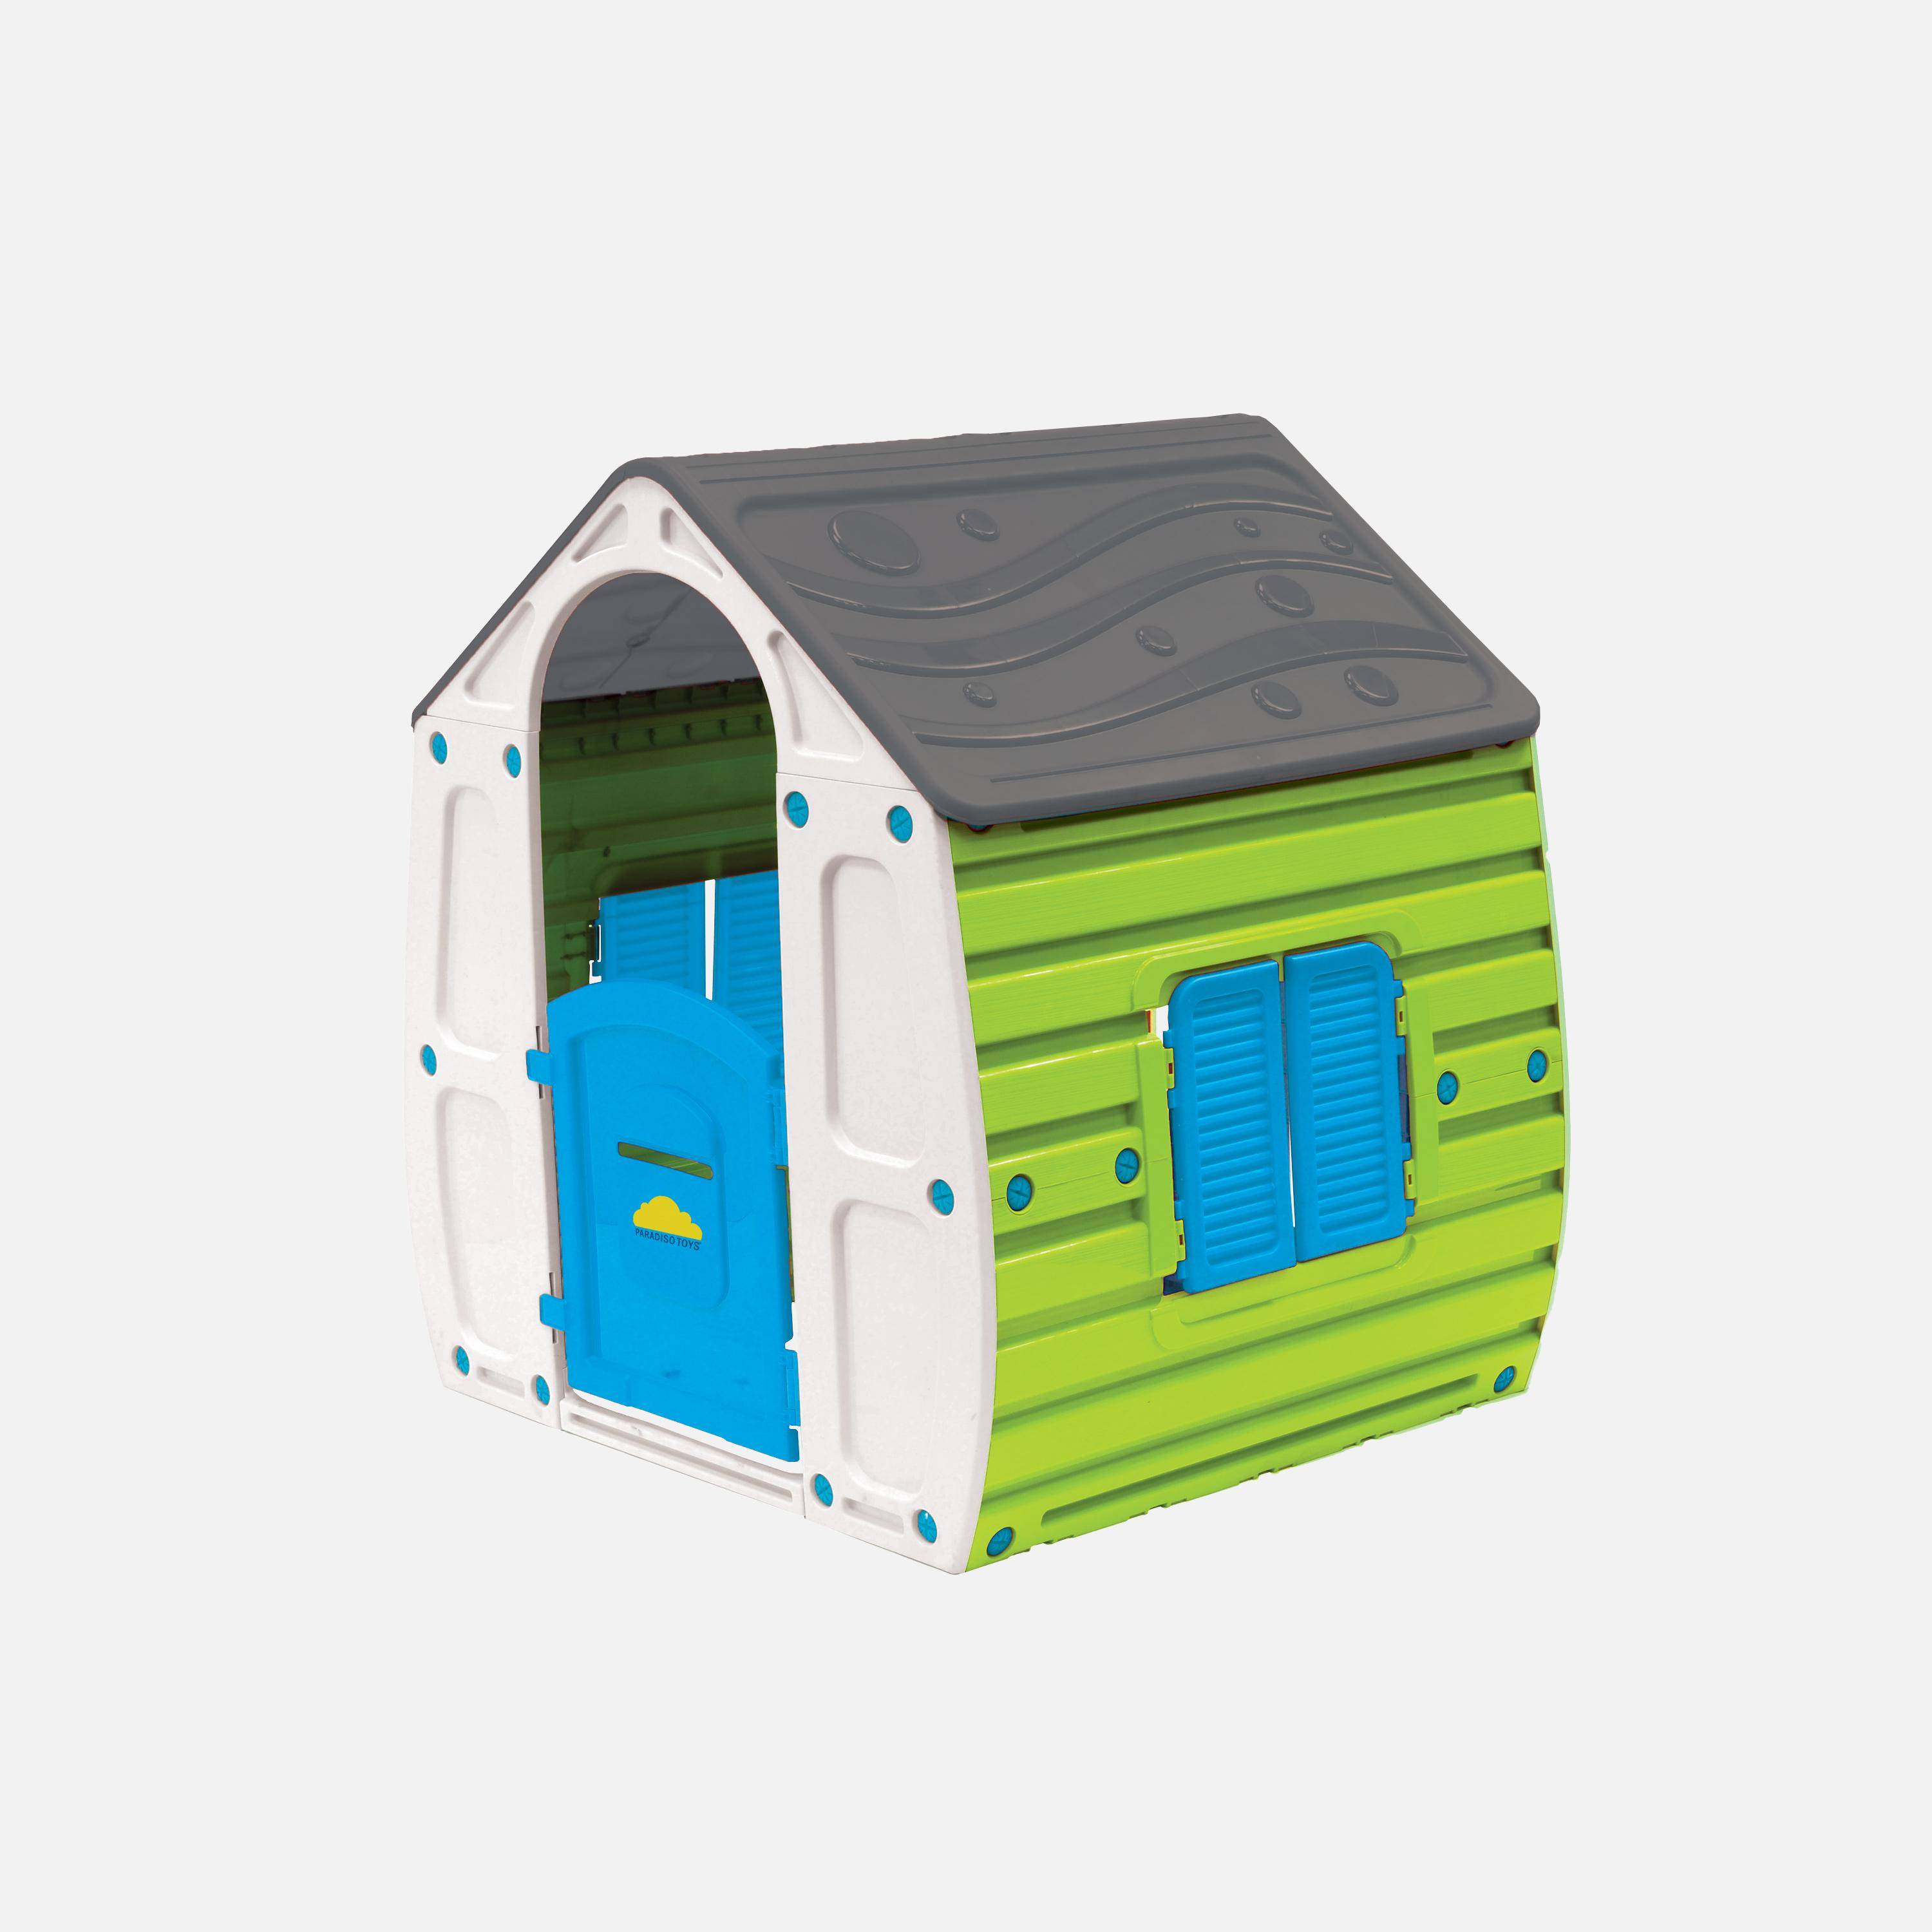 Cabane colorée en plastique pour enfant - LOU- L102 X l90 X H109 cm,sweeek,Photo4